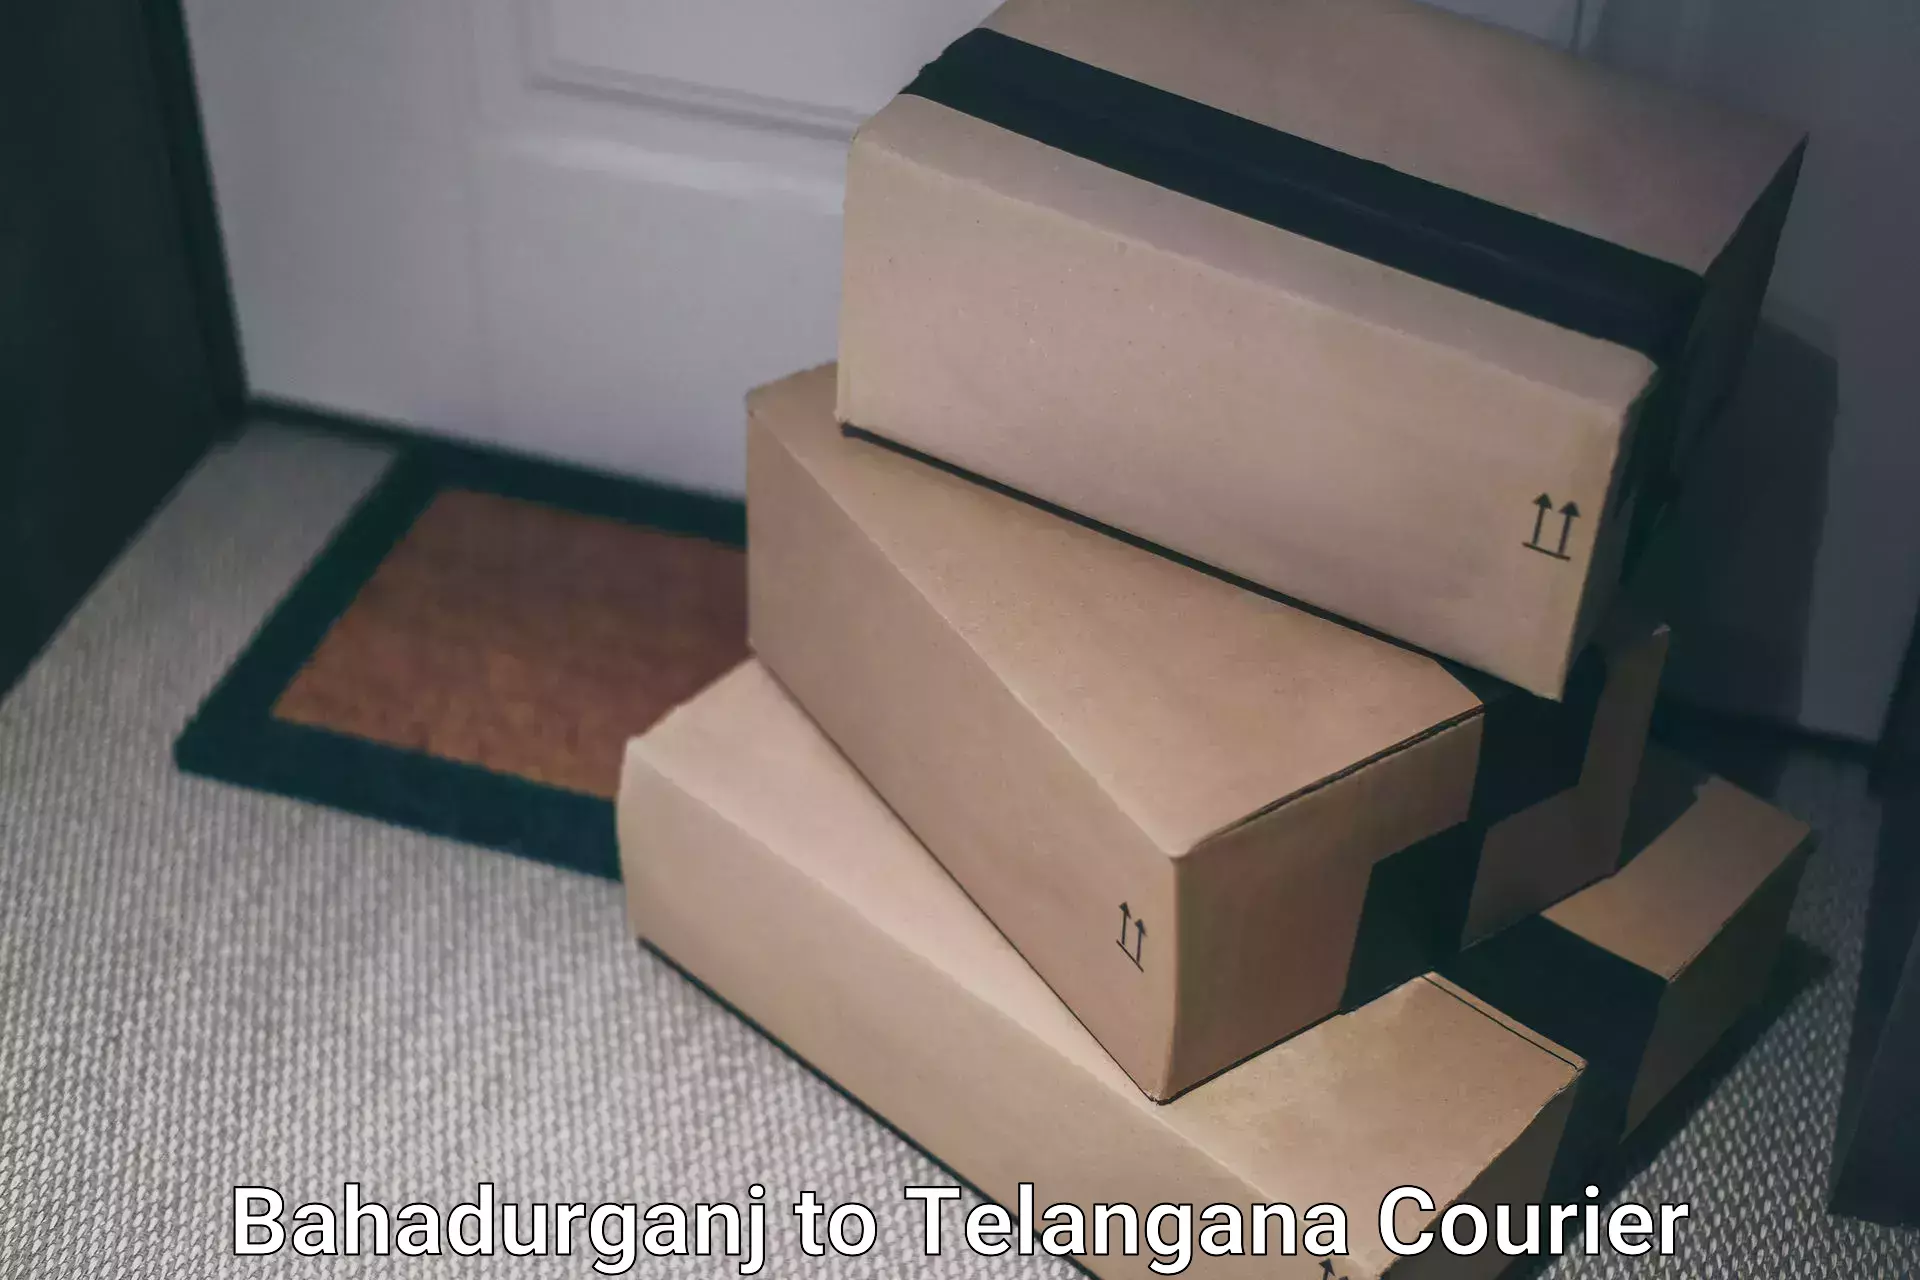 High-efficiency logistics Bahadurganj to Jannaram